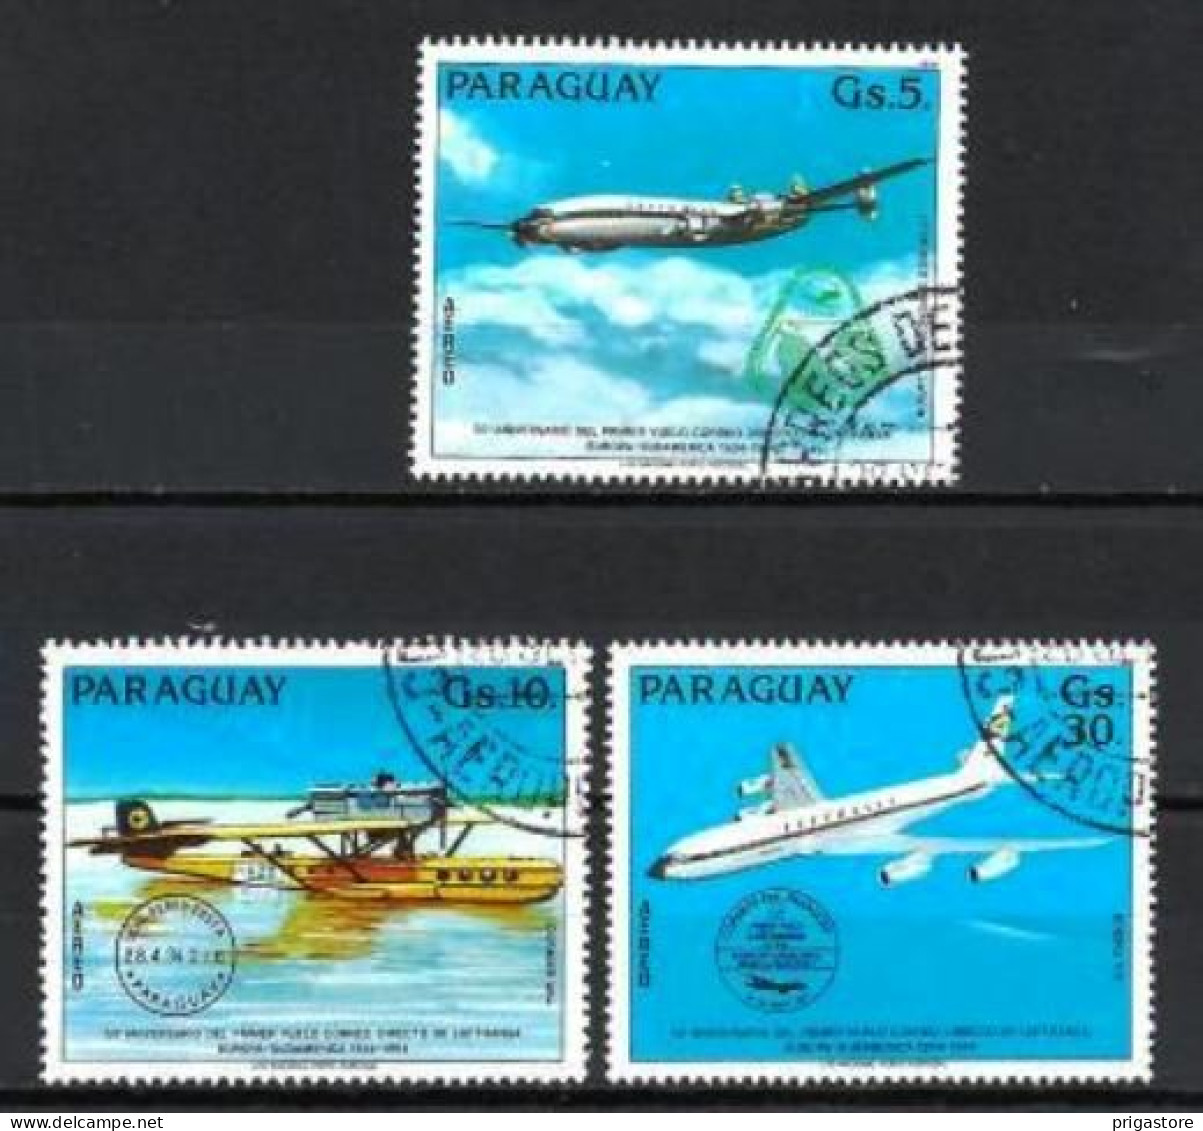 Paraguay 1984 Avions (19) Yvert N° Non Répertorié Oblitéré Used - Paraguay